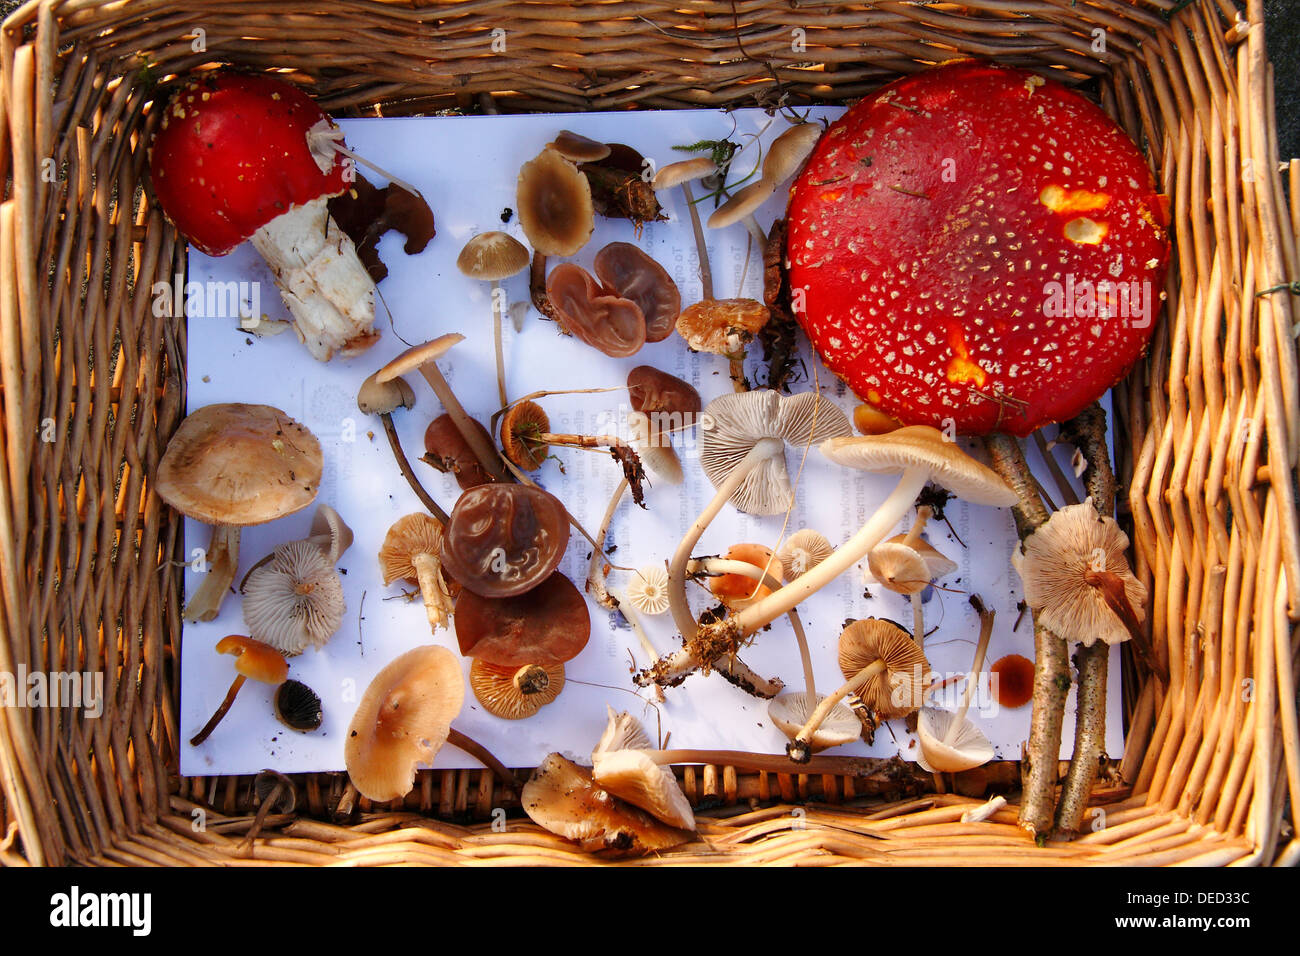 Les champignons comestibles ou non recueillis dans un panier sur une incursion dans les bois près de Buxton Derbyshire Peak District - l'automne Banque D'Images